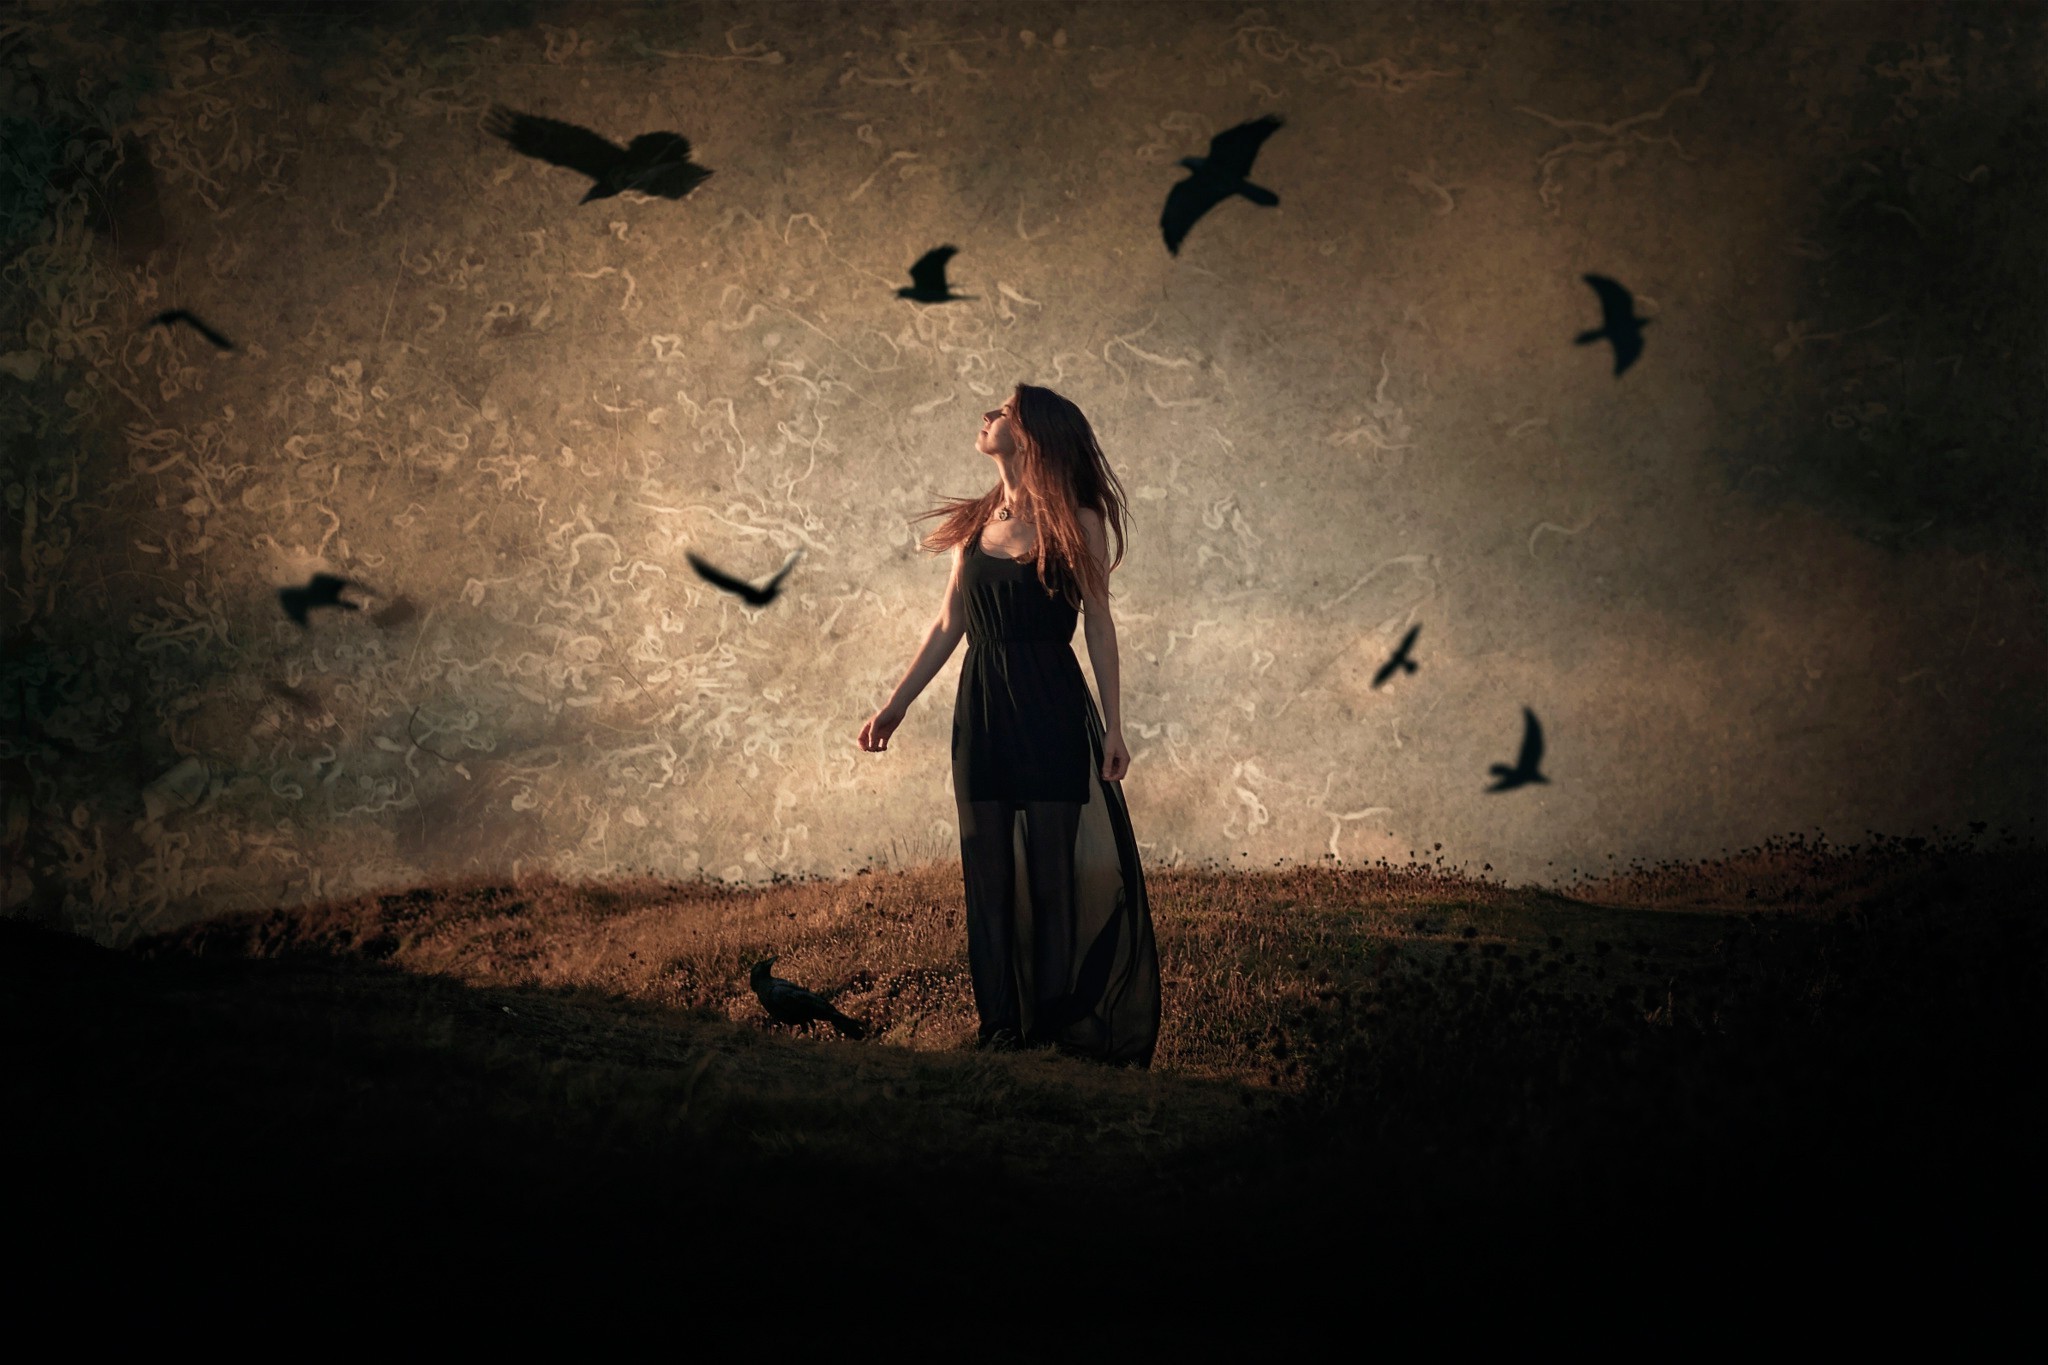 免费照片乌鸦在一个穿黑裙子的女孩上空盘旋。